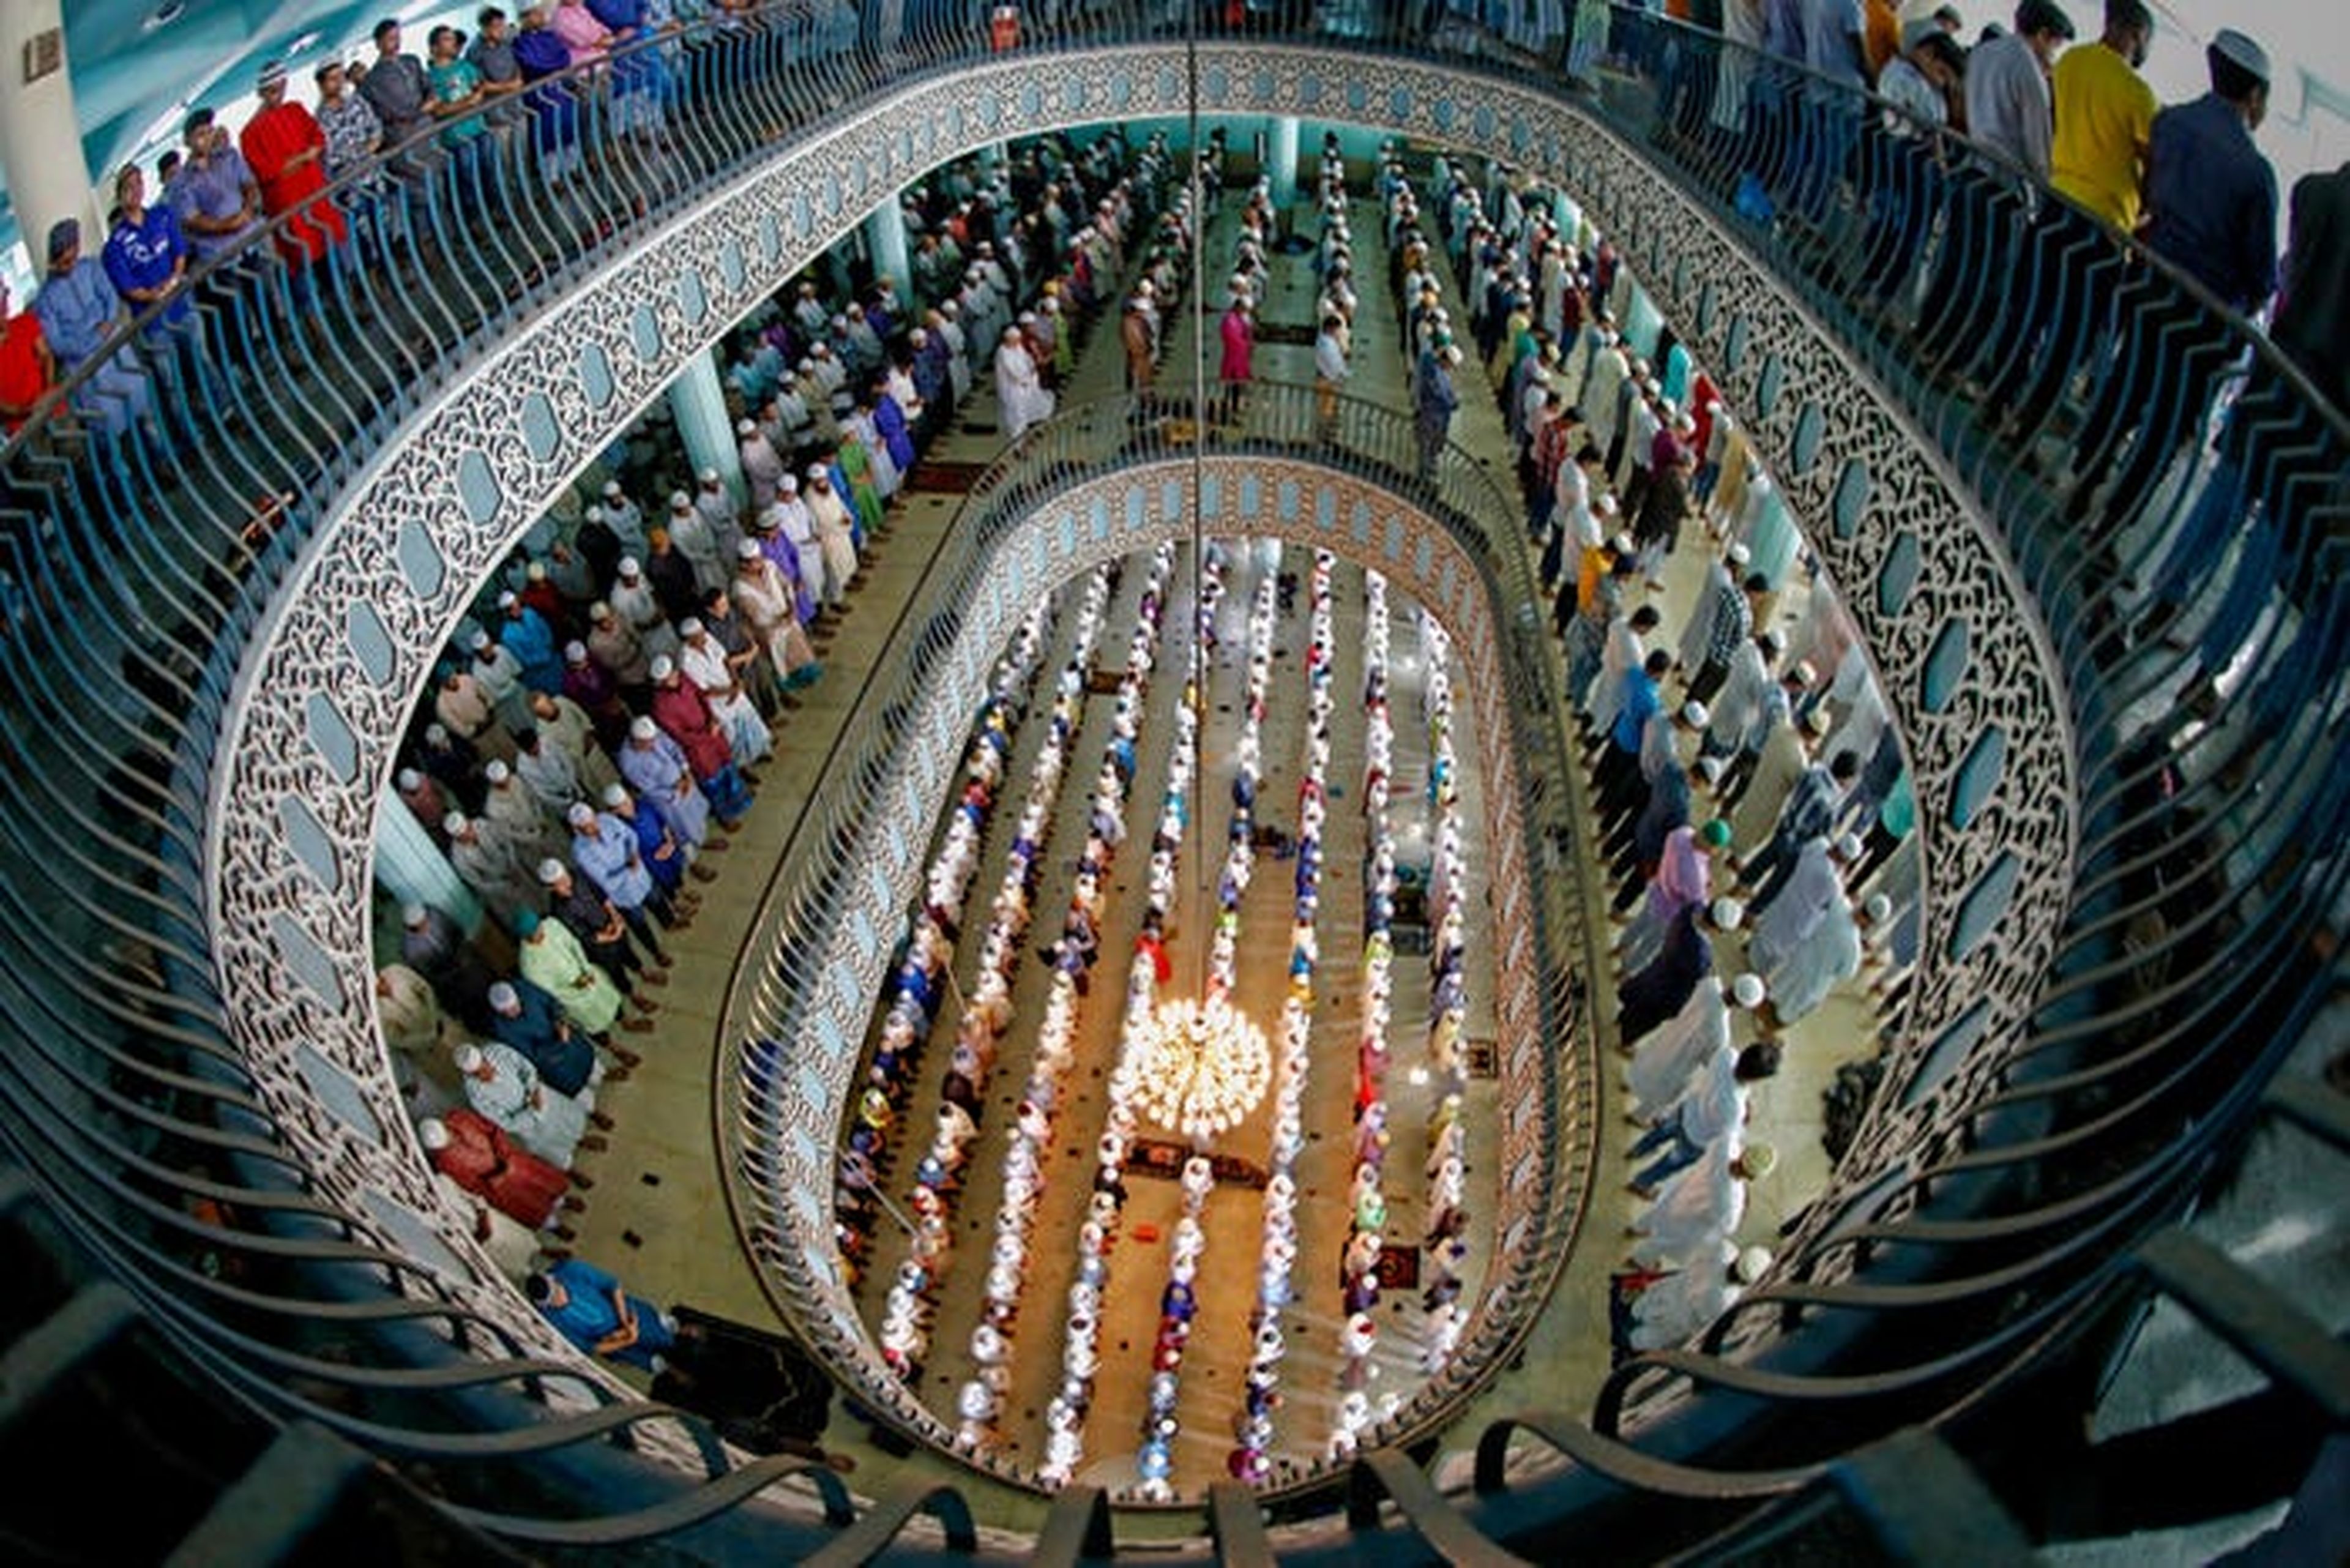 'Las primeras oraciones jummah durante el Ramadán', fotografiada por Kazi Md. Jahirul Islam